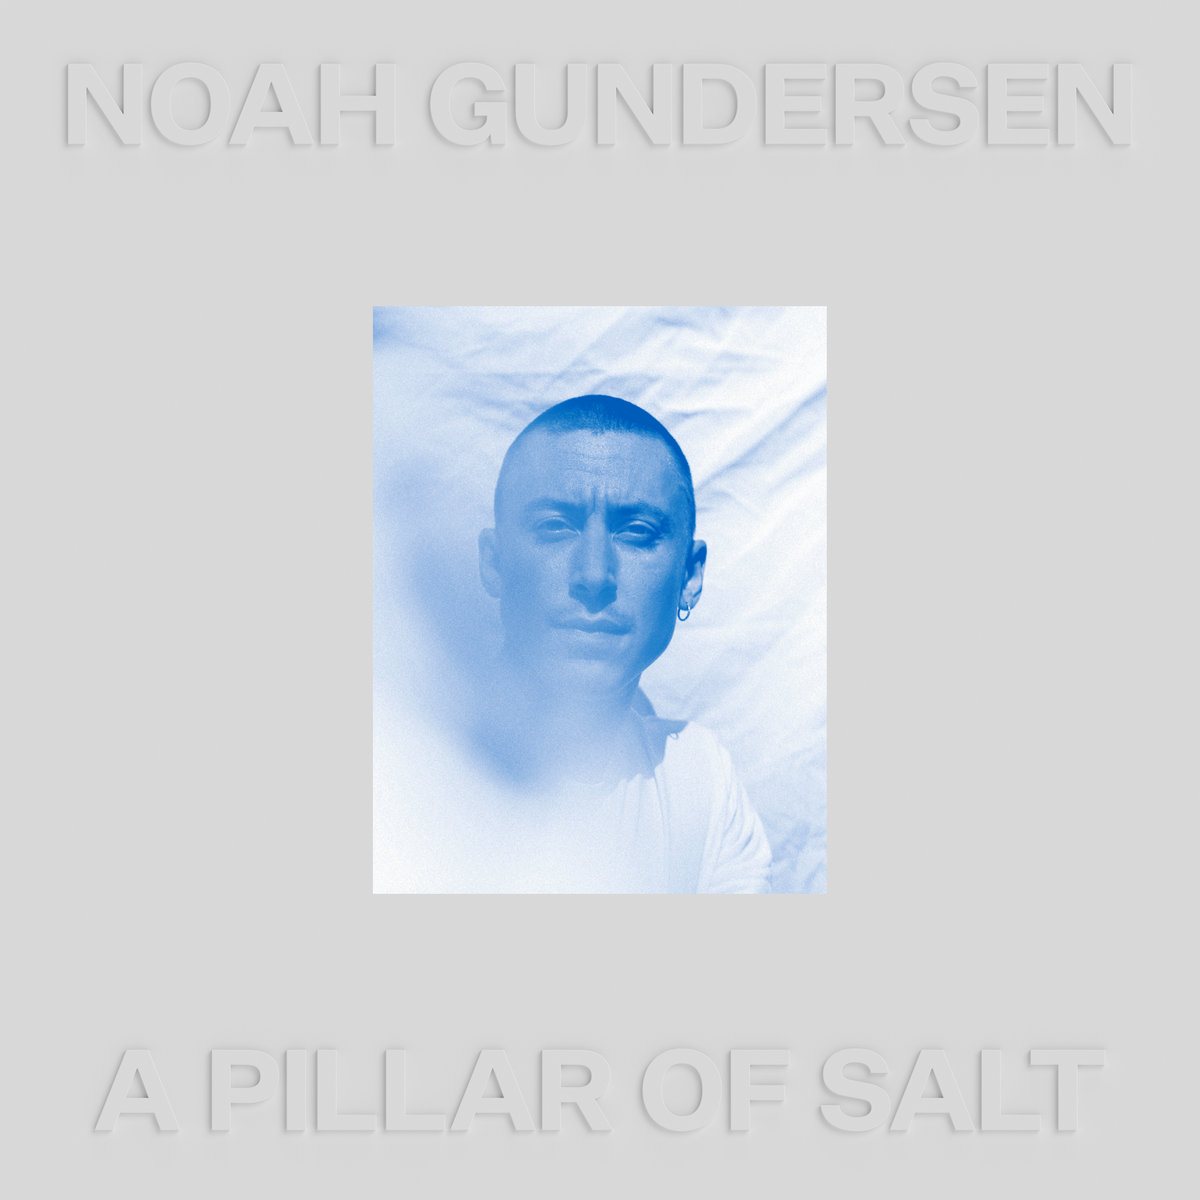 Music Review: A Pillar of Salt by Noah Gundersen